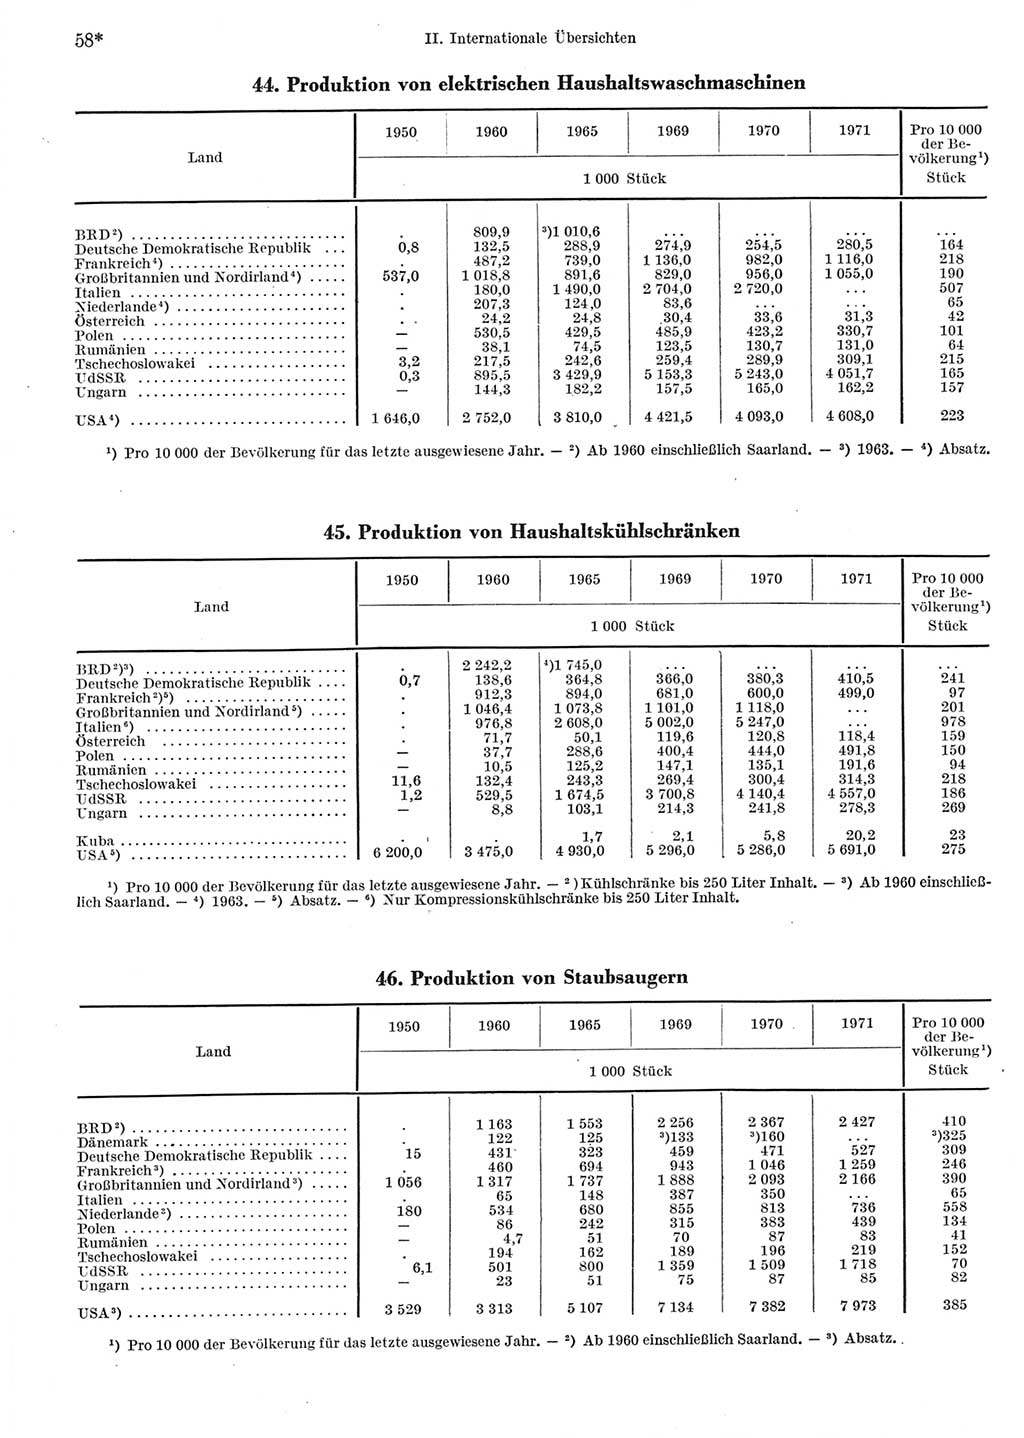 Statistisches Jahrbuch der Deutschen Demokratischen Republik (DDR) 1973, Seite 58 (Stat. Jb. DDR 1973, S. 58)